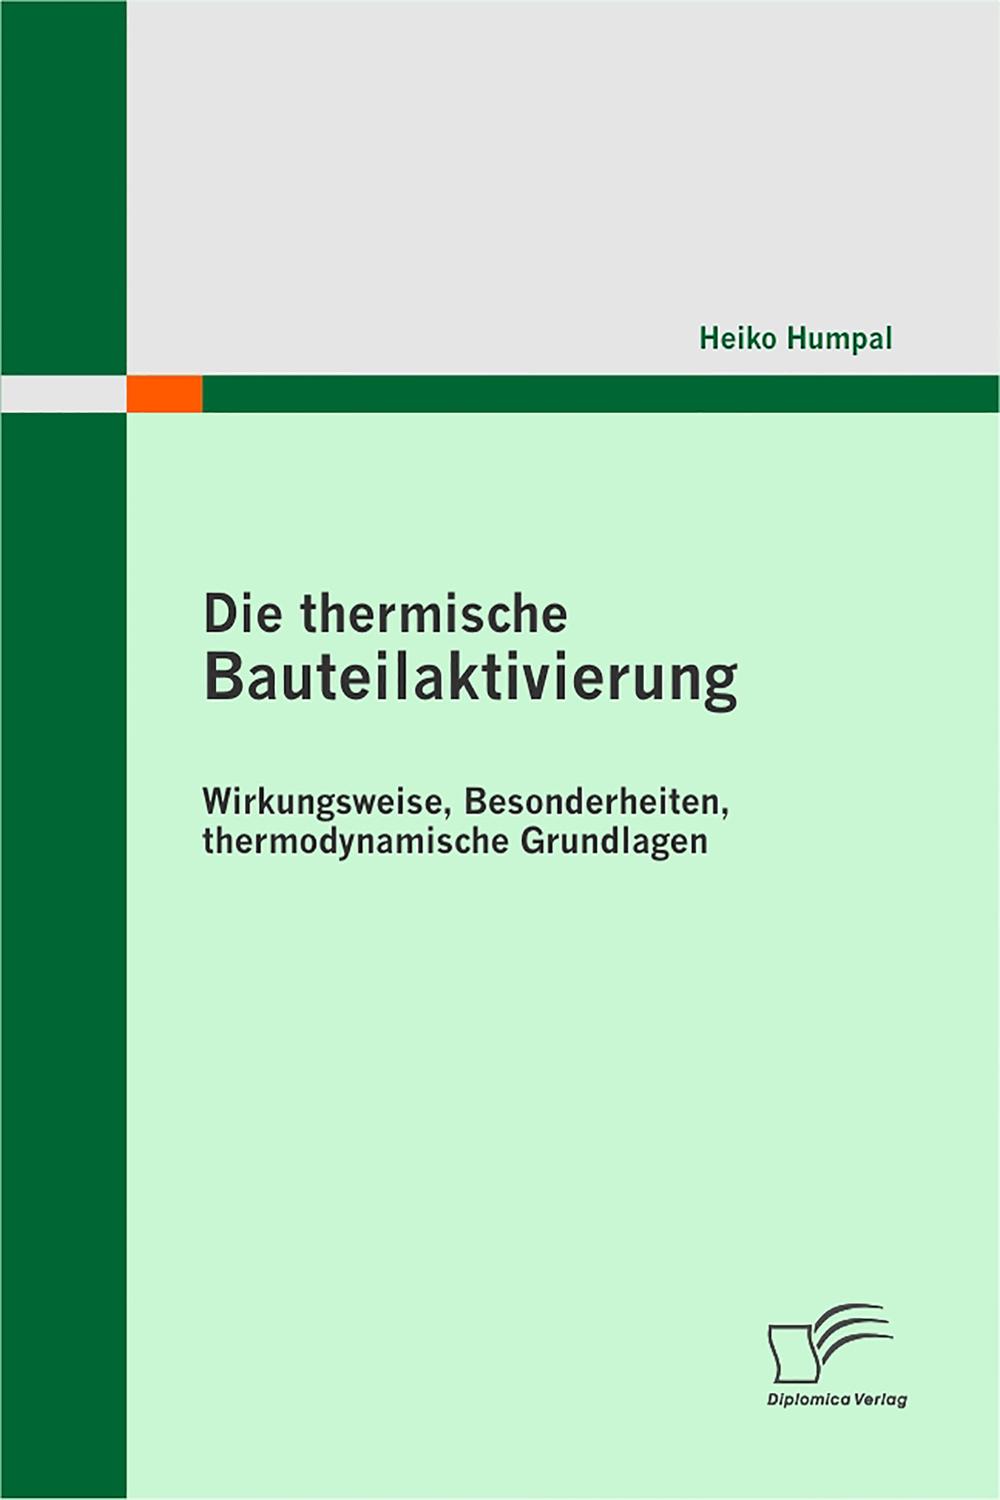 Die thermische Bauteilaktivierung - Heiko Humpal